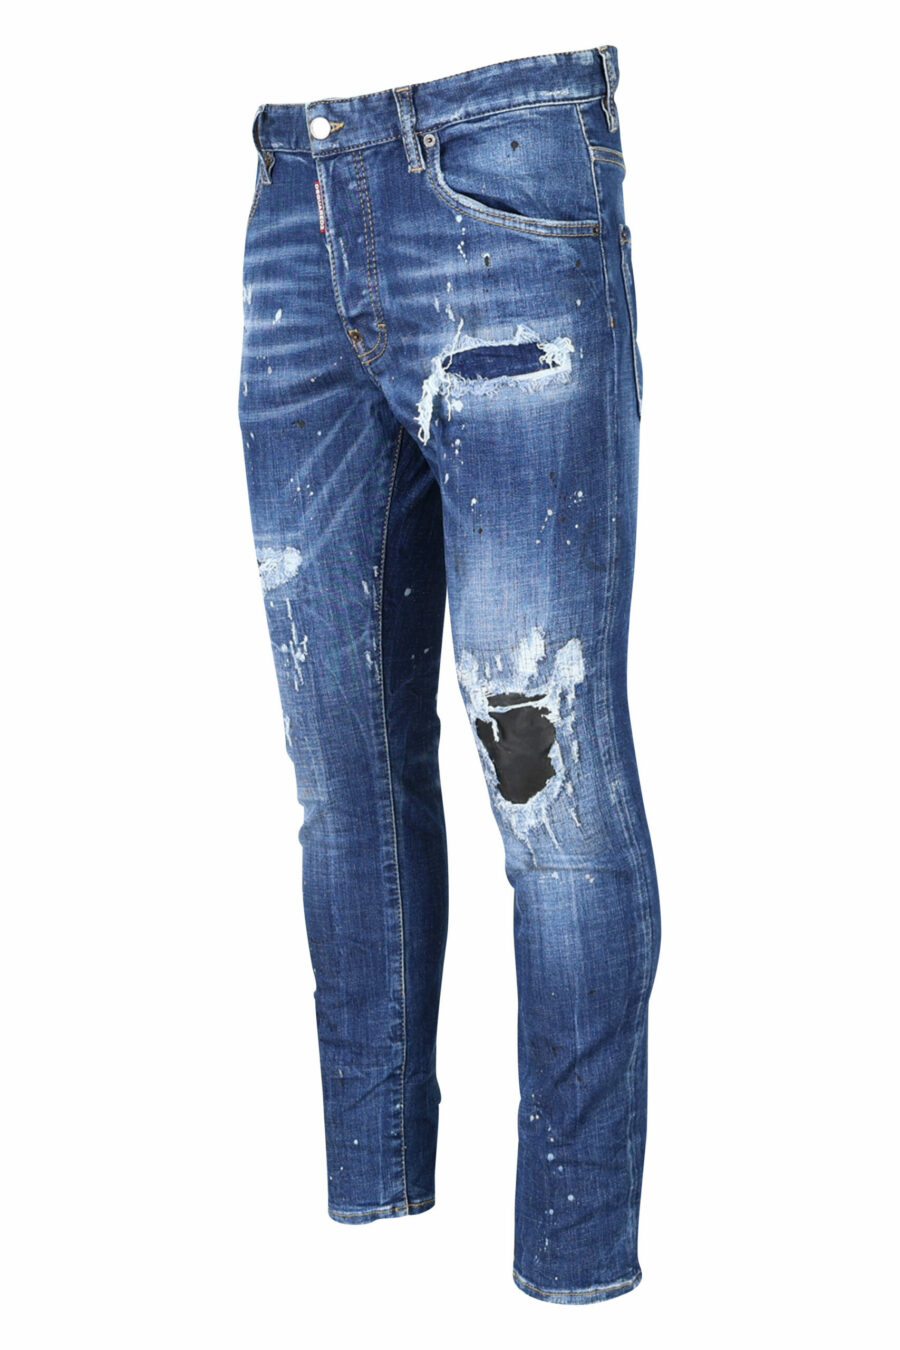 Pantalón vaquero "super twinkey jean" azul desgastado con roto negro - 8054148124328 1 scaled